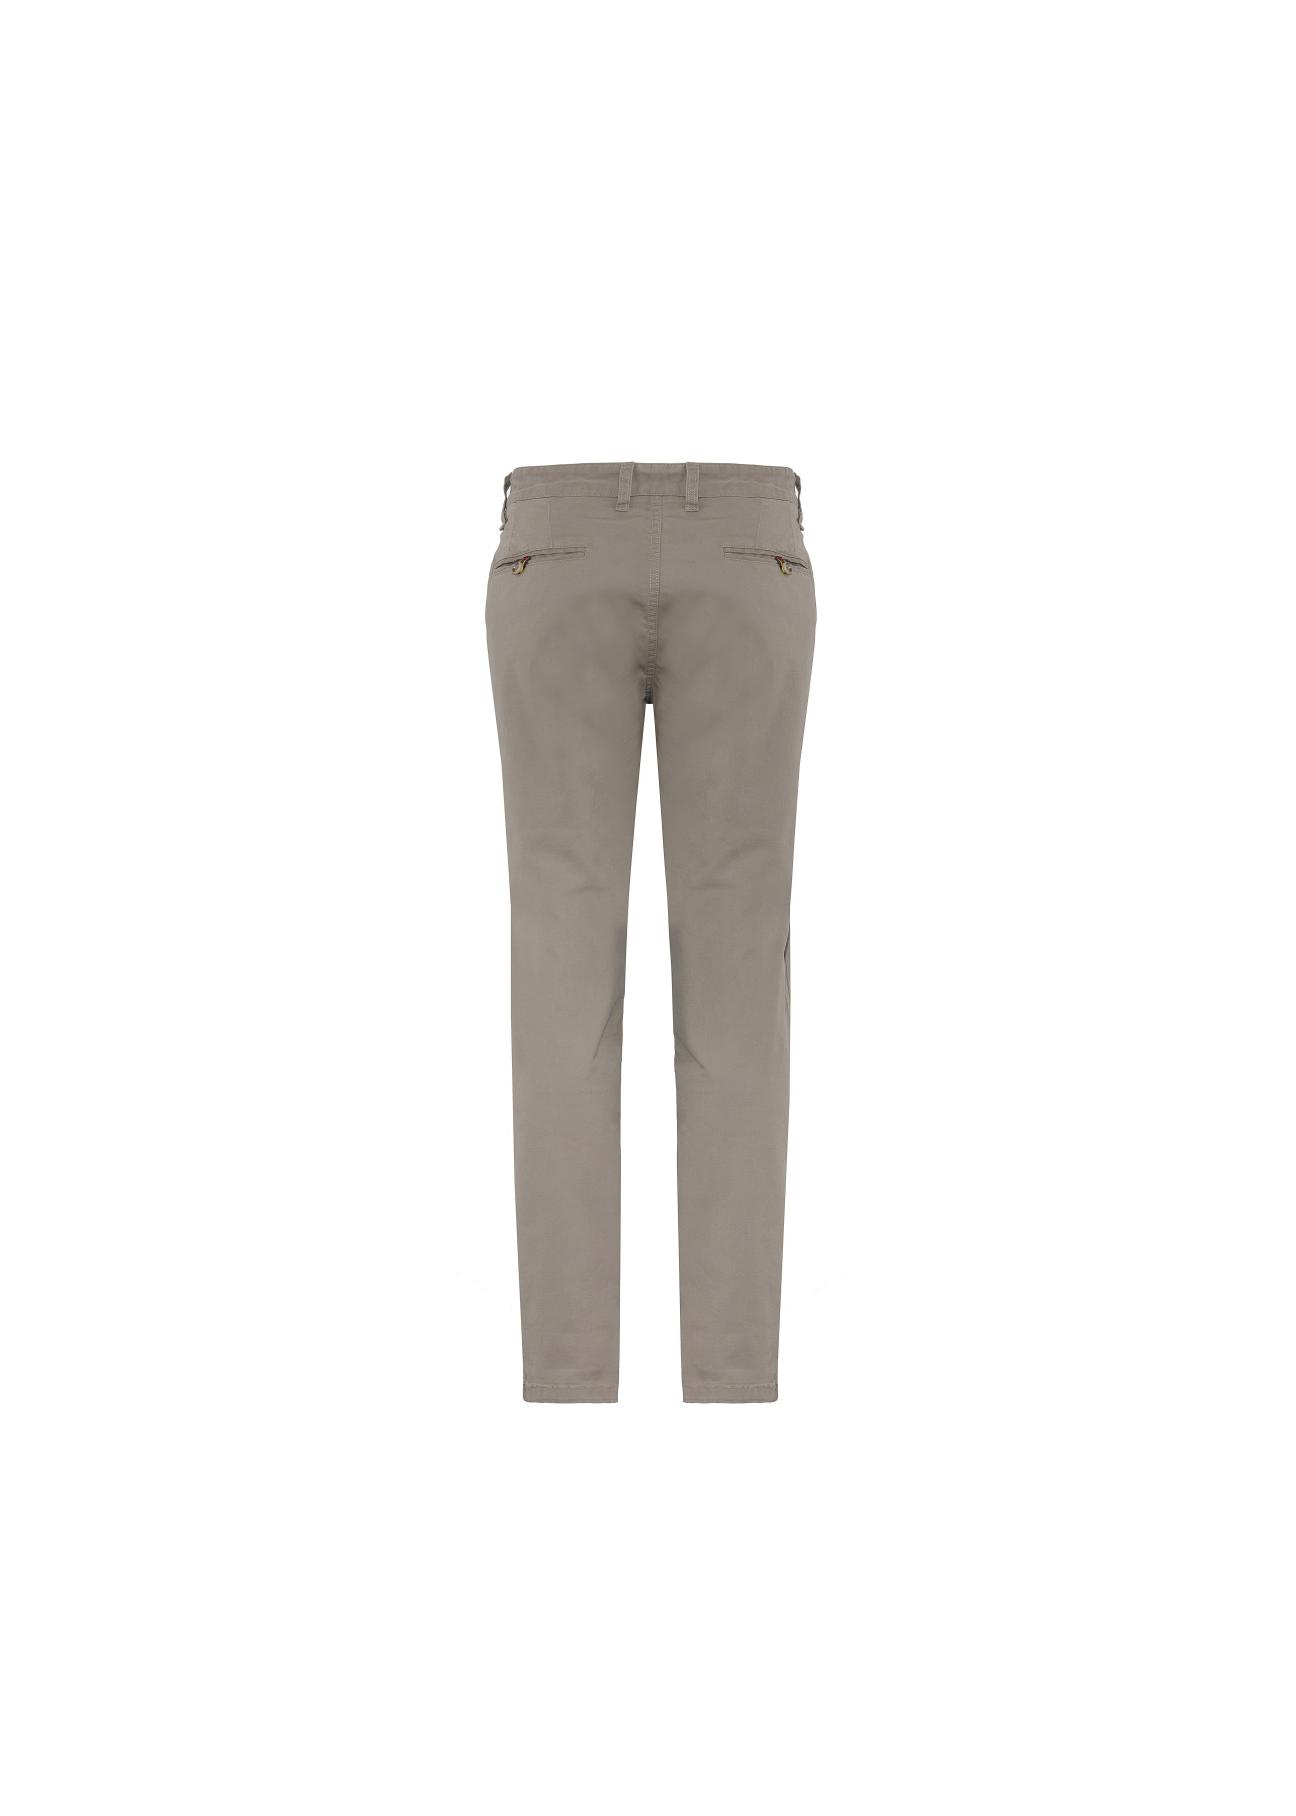 Spodnie męskie SPOMT-0045-81(W20)